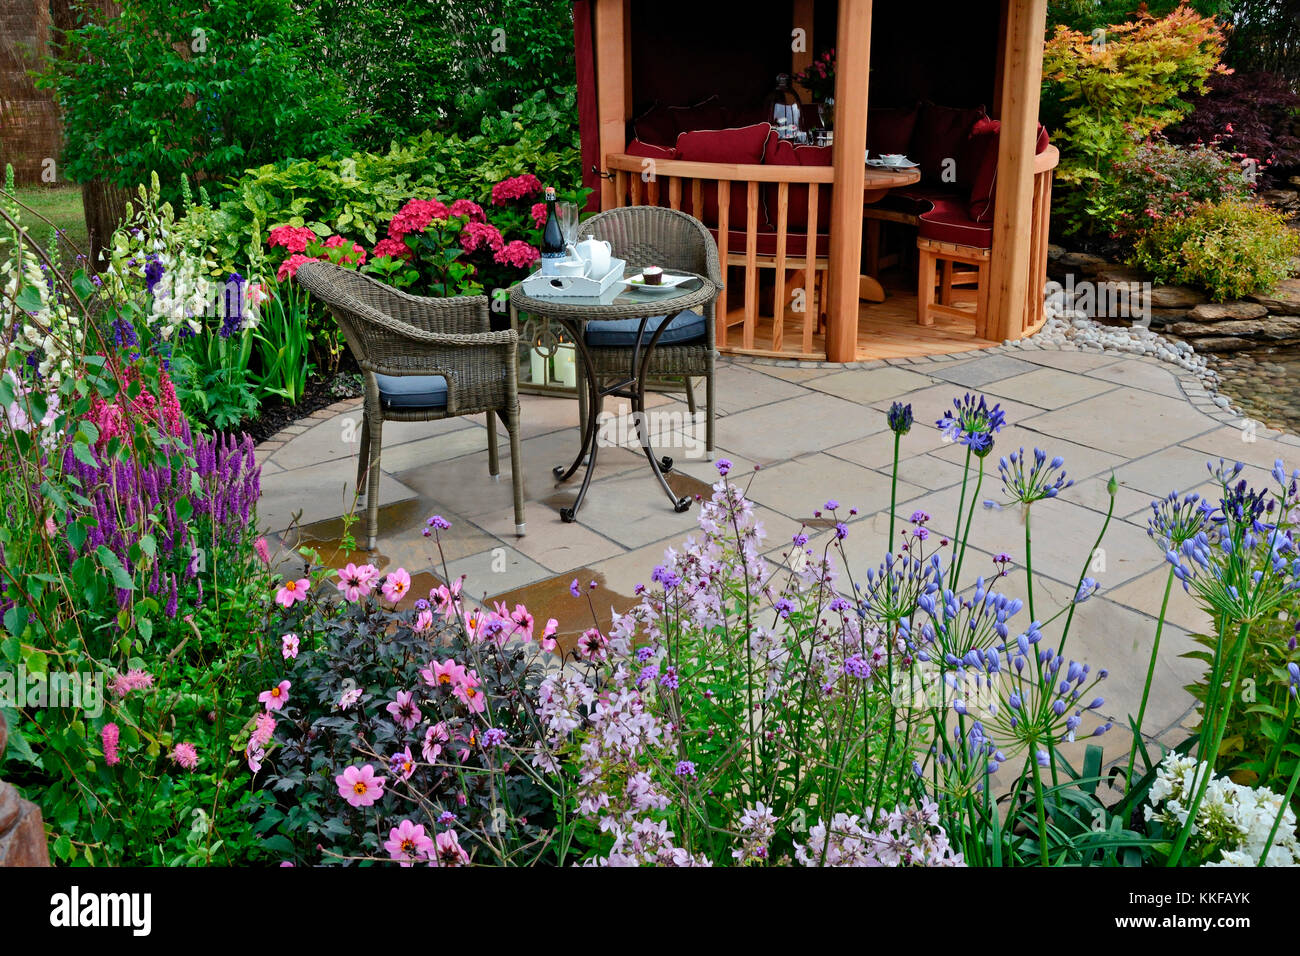 Die Terrasse in einem aquatischen Garten mit bunten Blumen Grenze und attraktive Sitzgelegenheiten Stockfoto